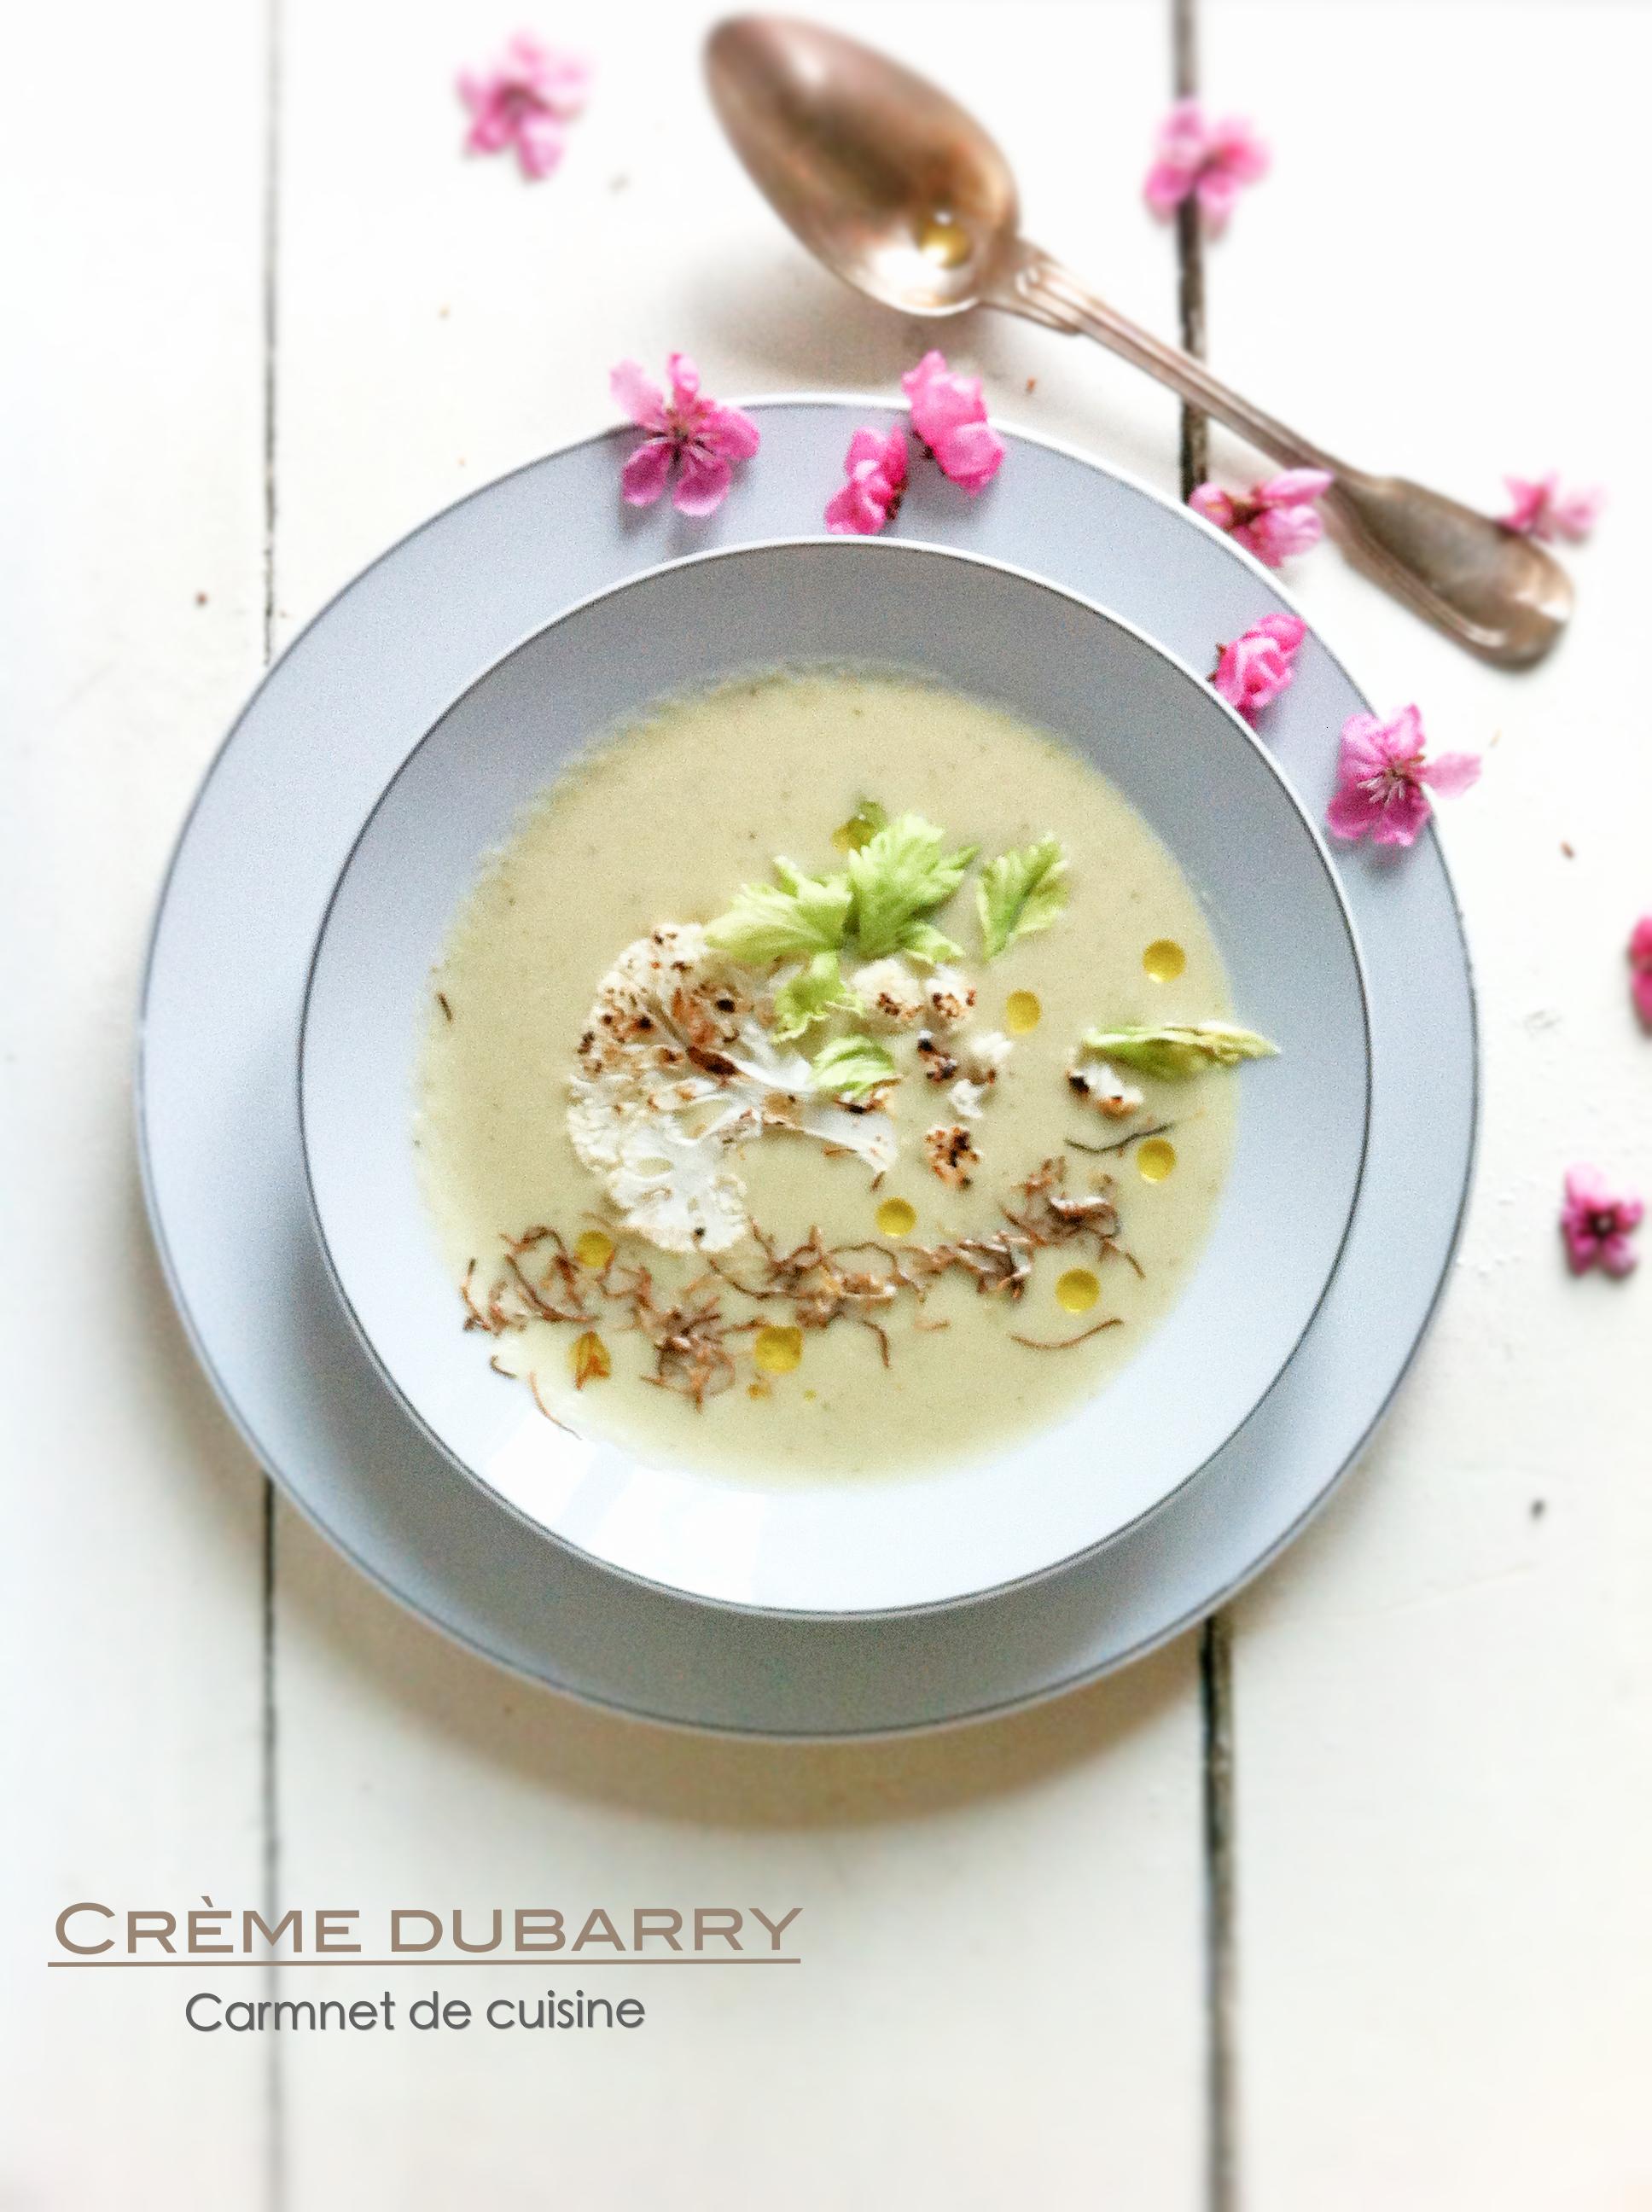 法國料理-情婦的濃湯奶油白花椰菜花湯Crème dubarry-3